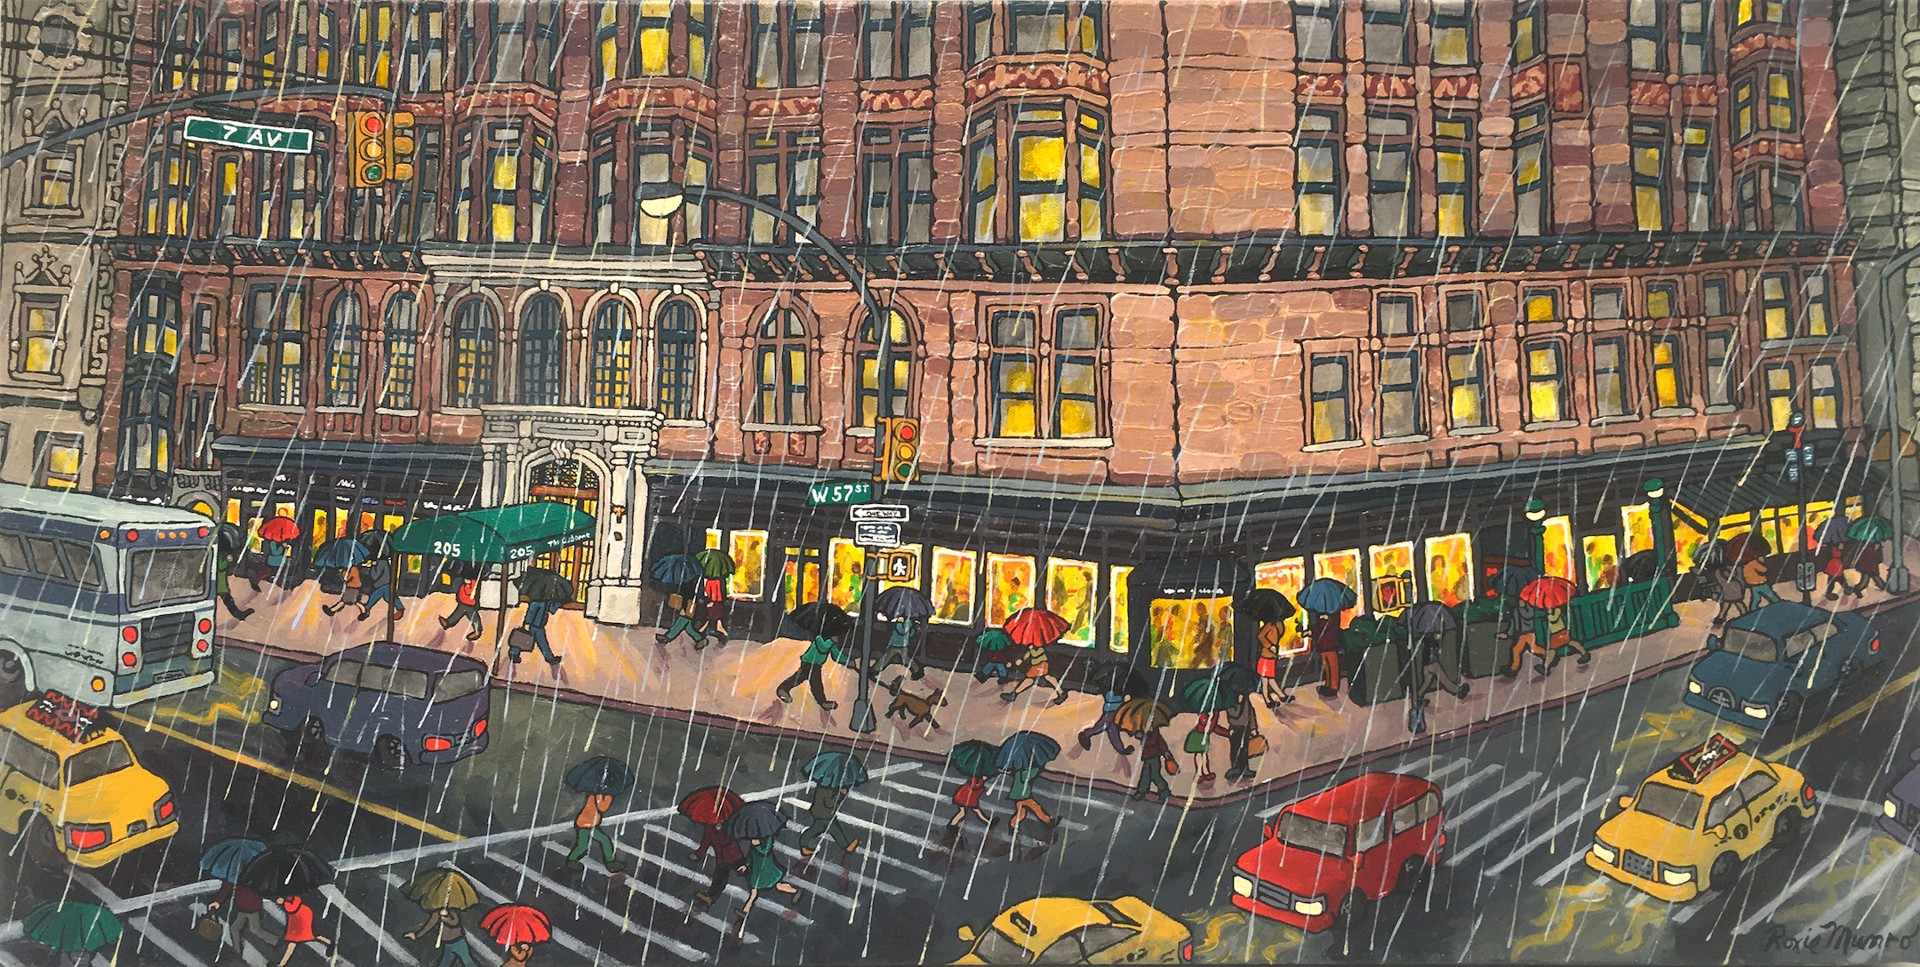 City Streets, 57th & 7th, Rain by Roxie Munro